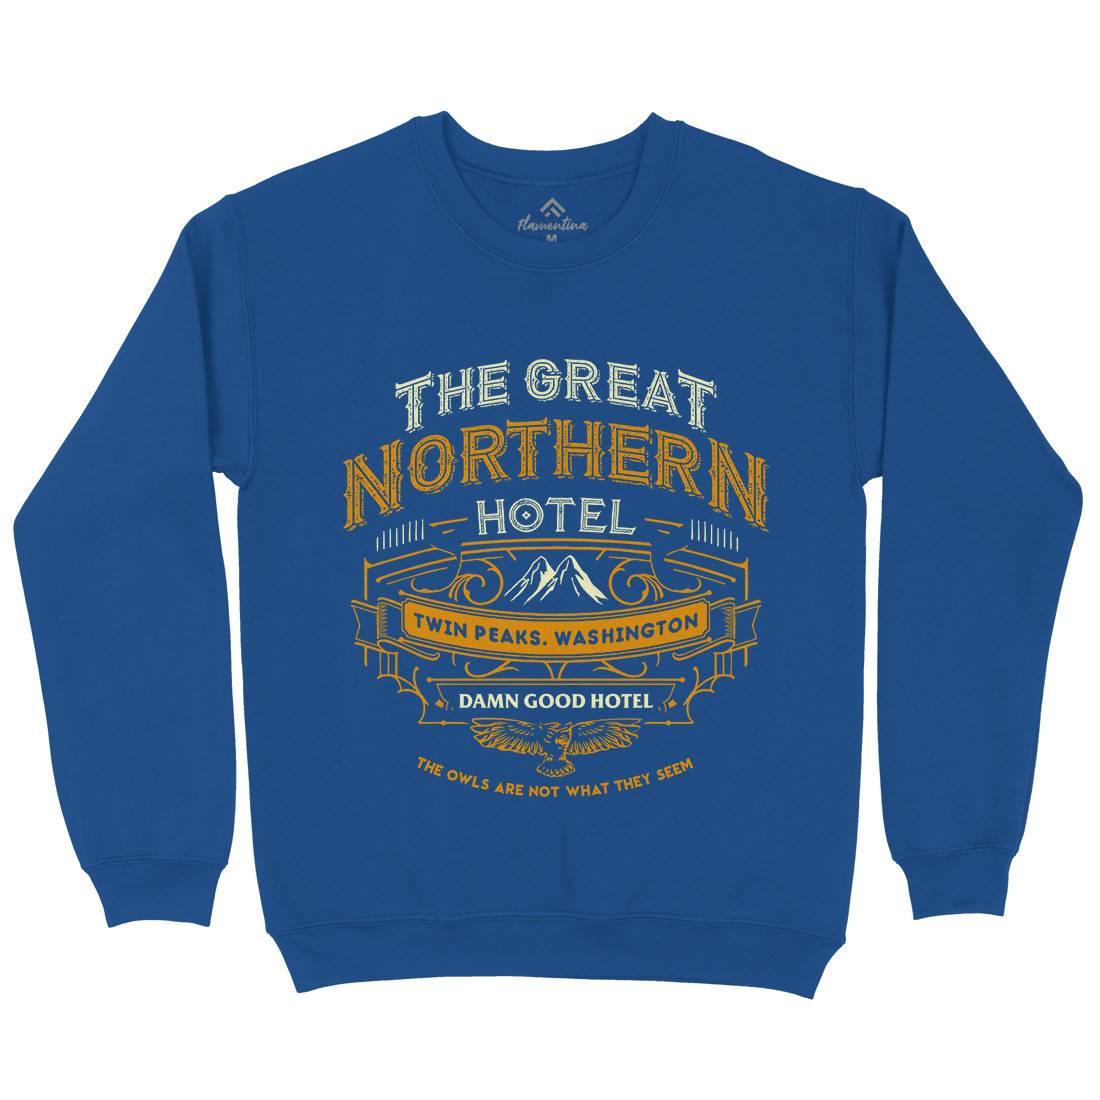 Great Northern Hotel Kids Crew Neck Sweatshirt Horror D185